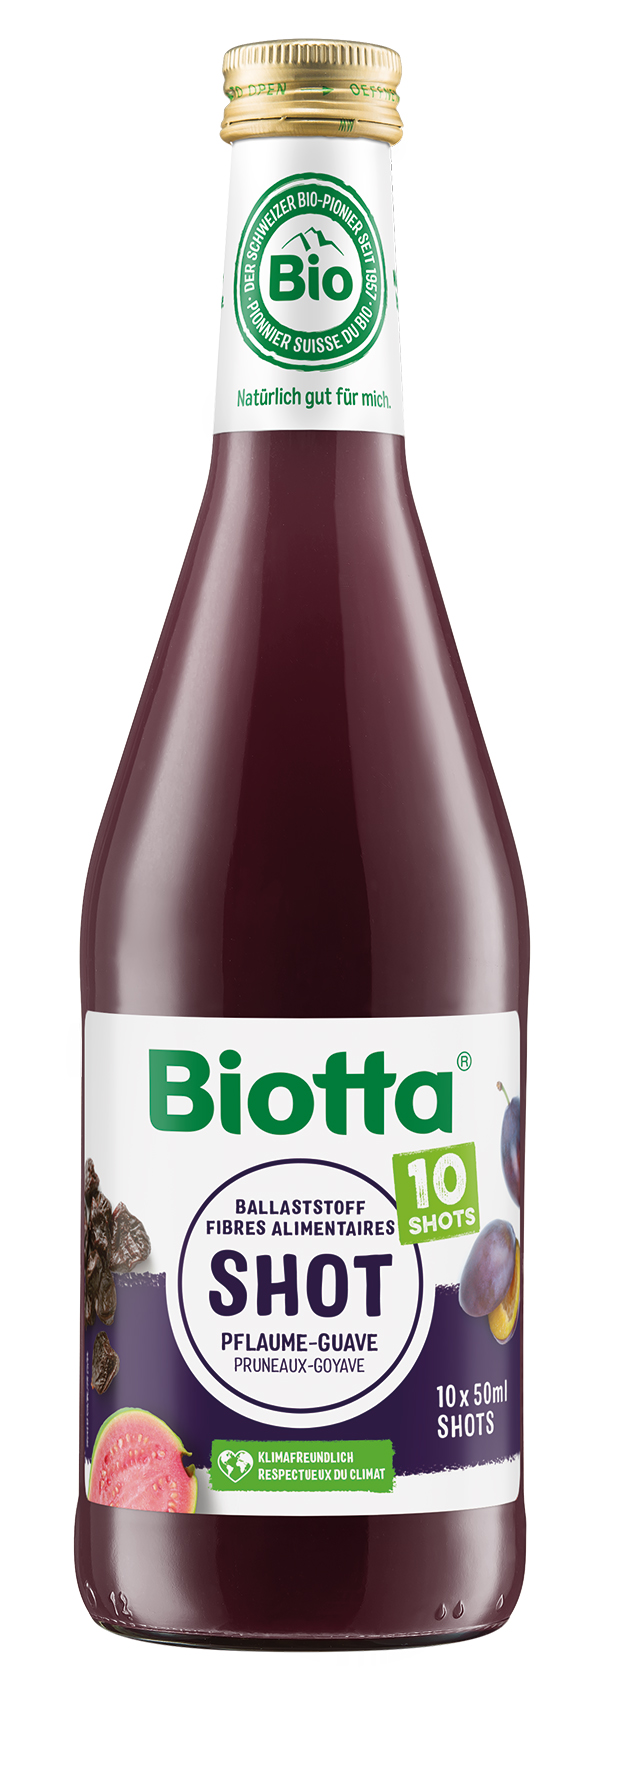 Biotta Ballaststoff SHOT Pflaume-Guave – Bio